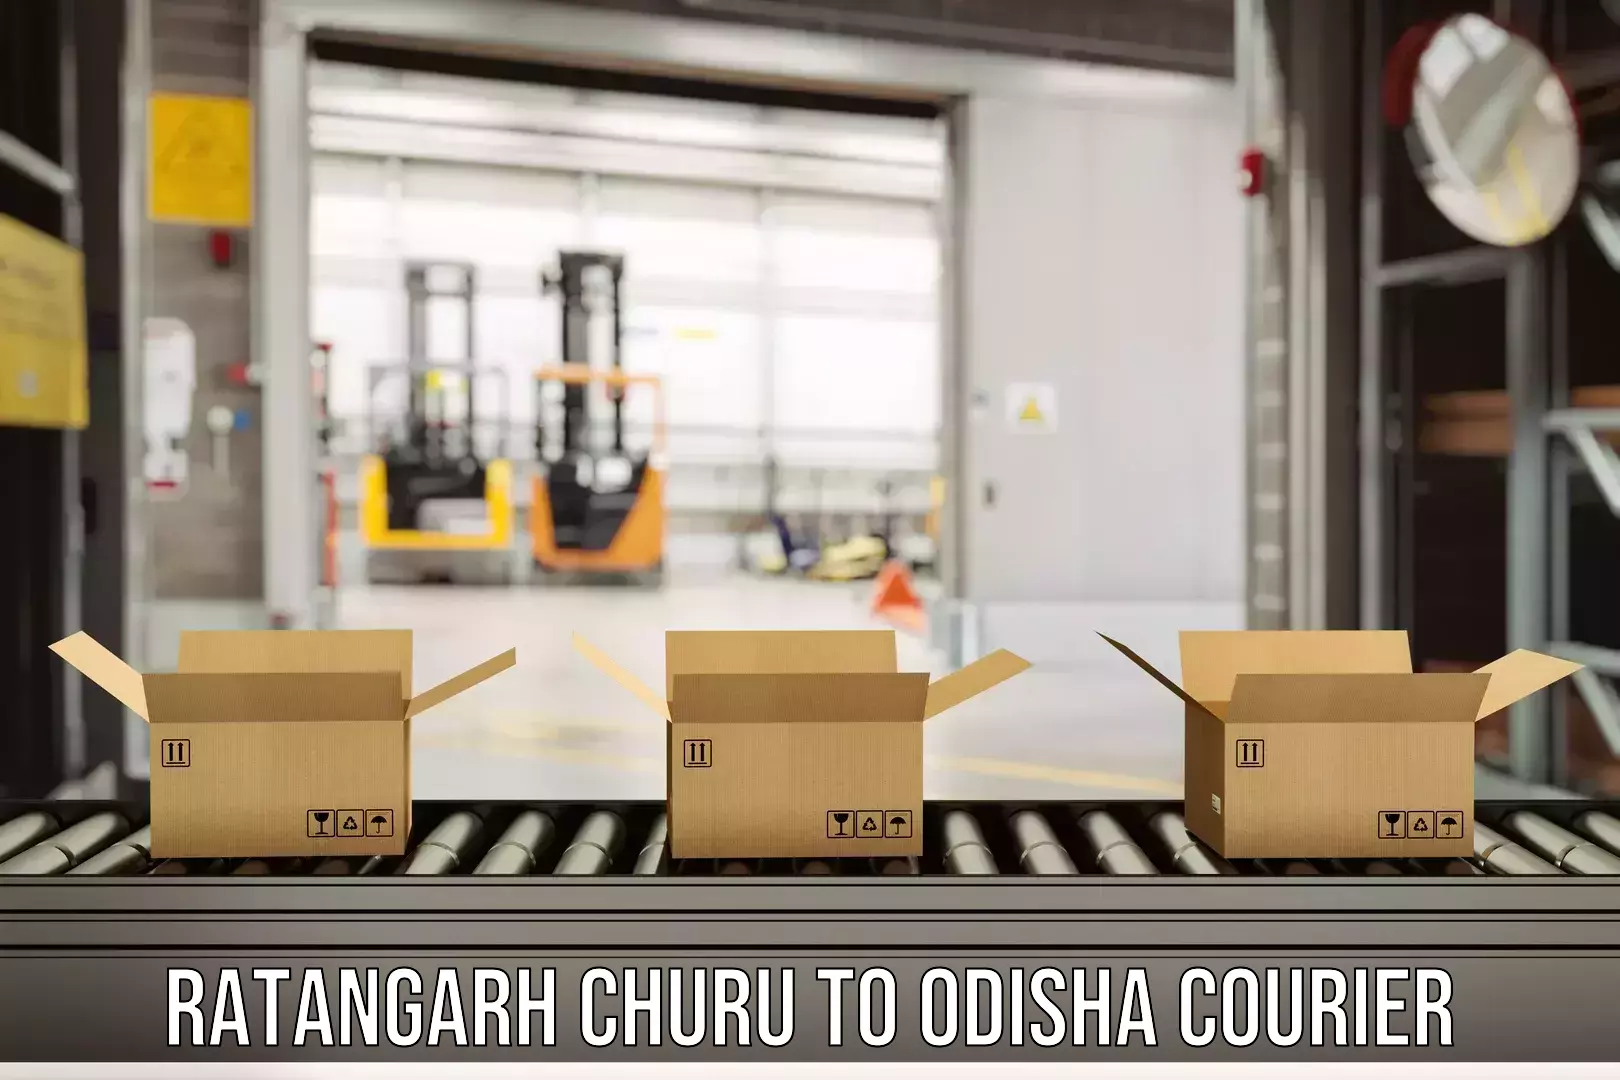 Supply chain efficiency in Ratangarh Churu to Sinapali